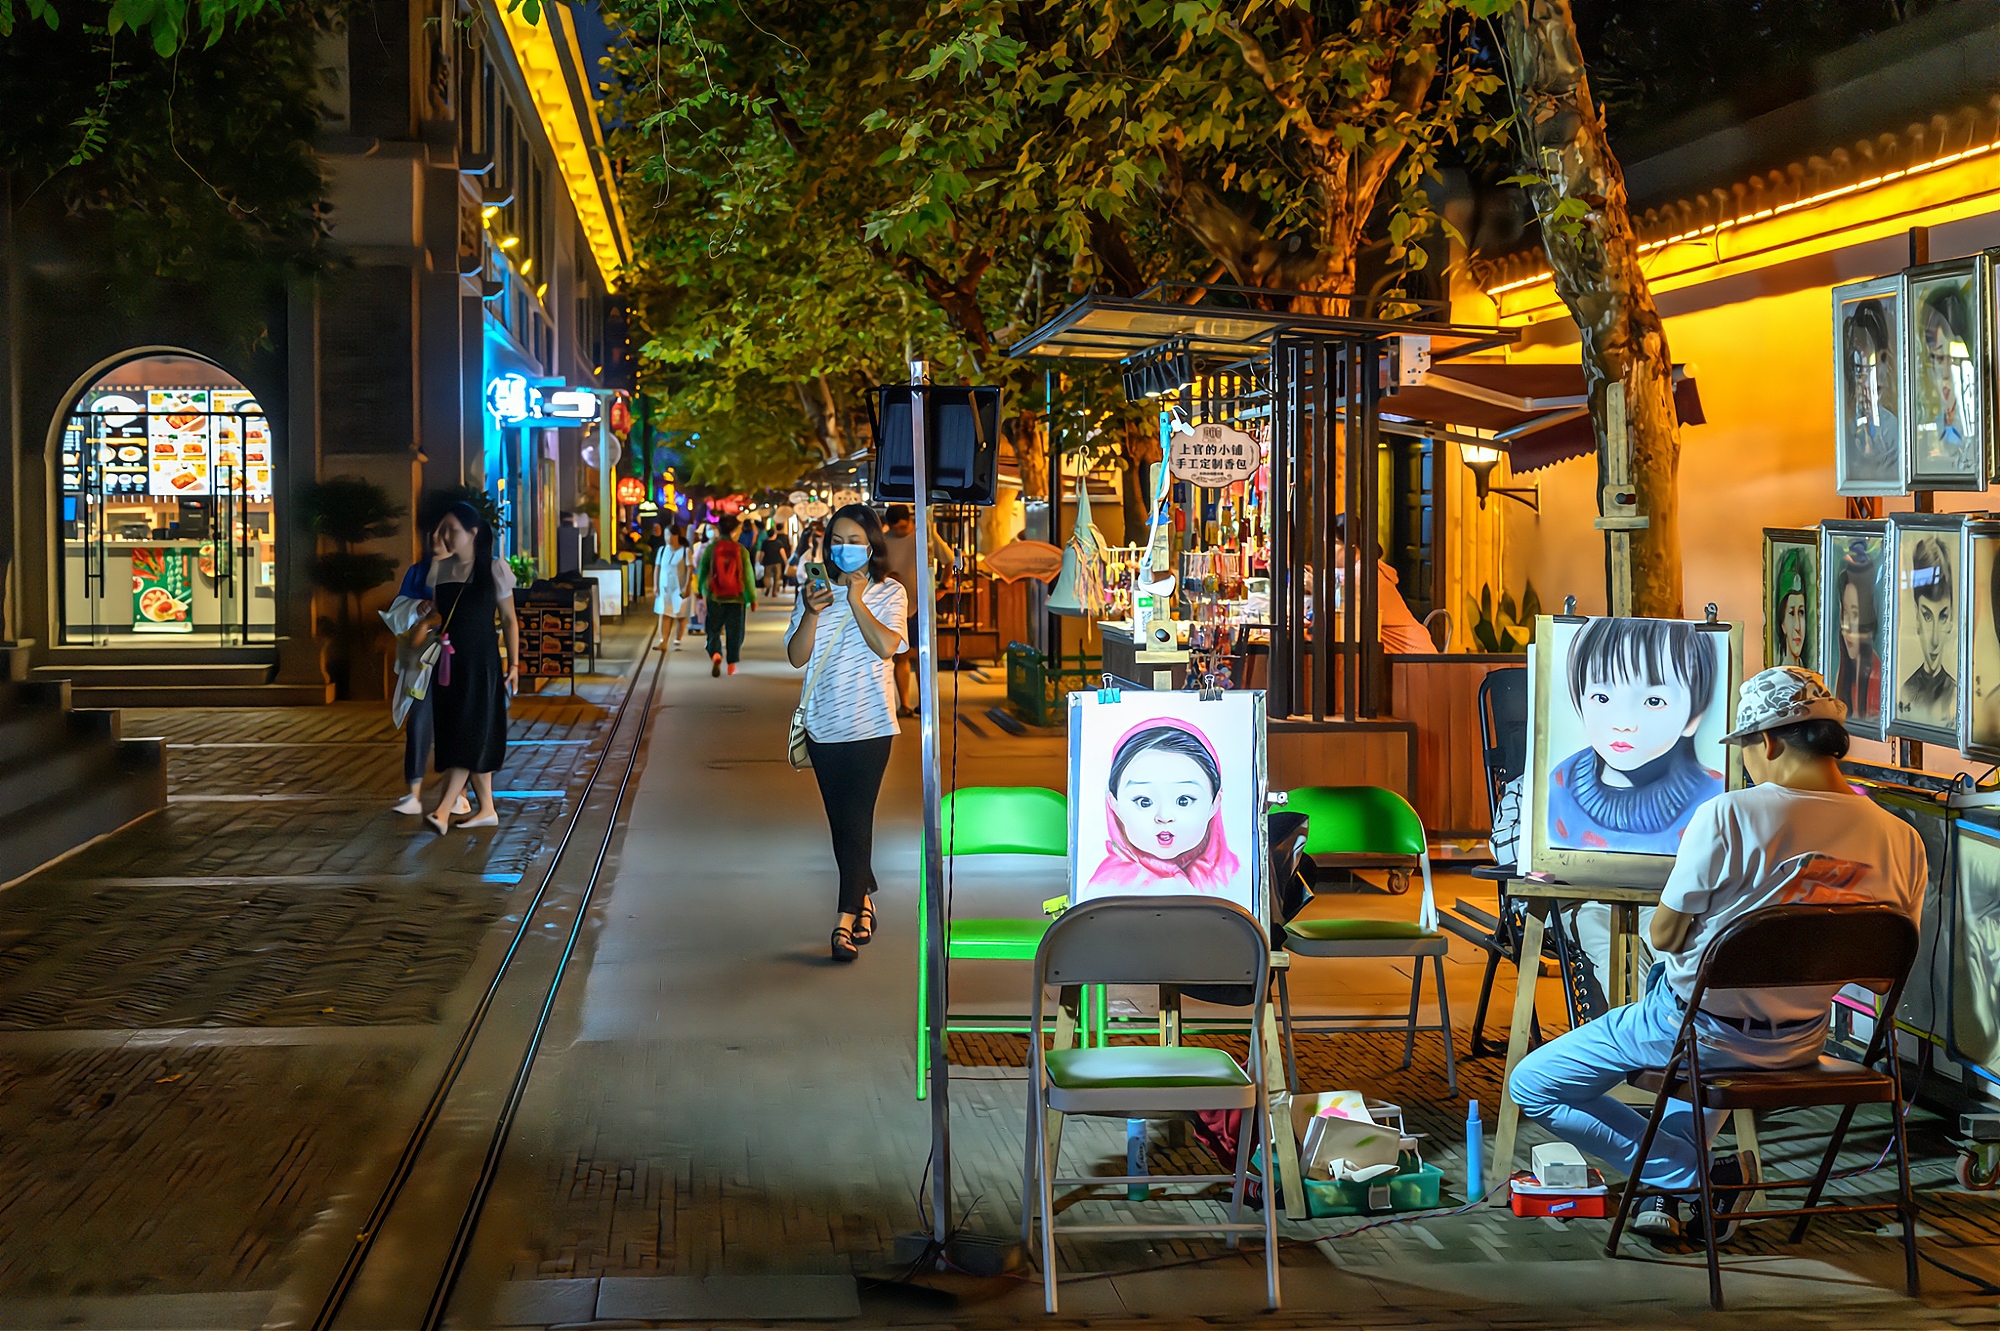 原创南京1912,曾经的酒吧一条街,如今的文艺特色街,你去过吗?